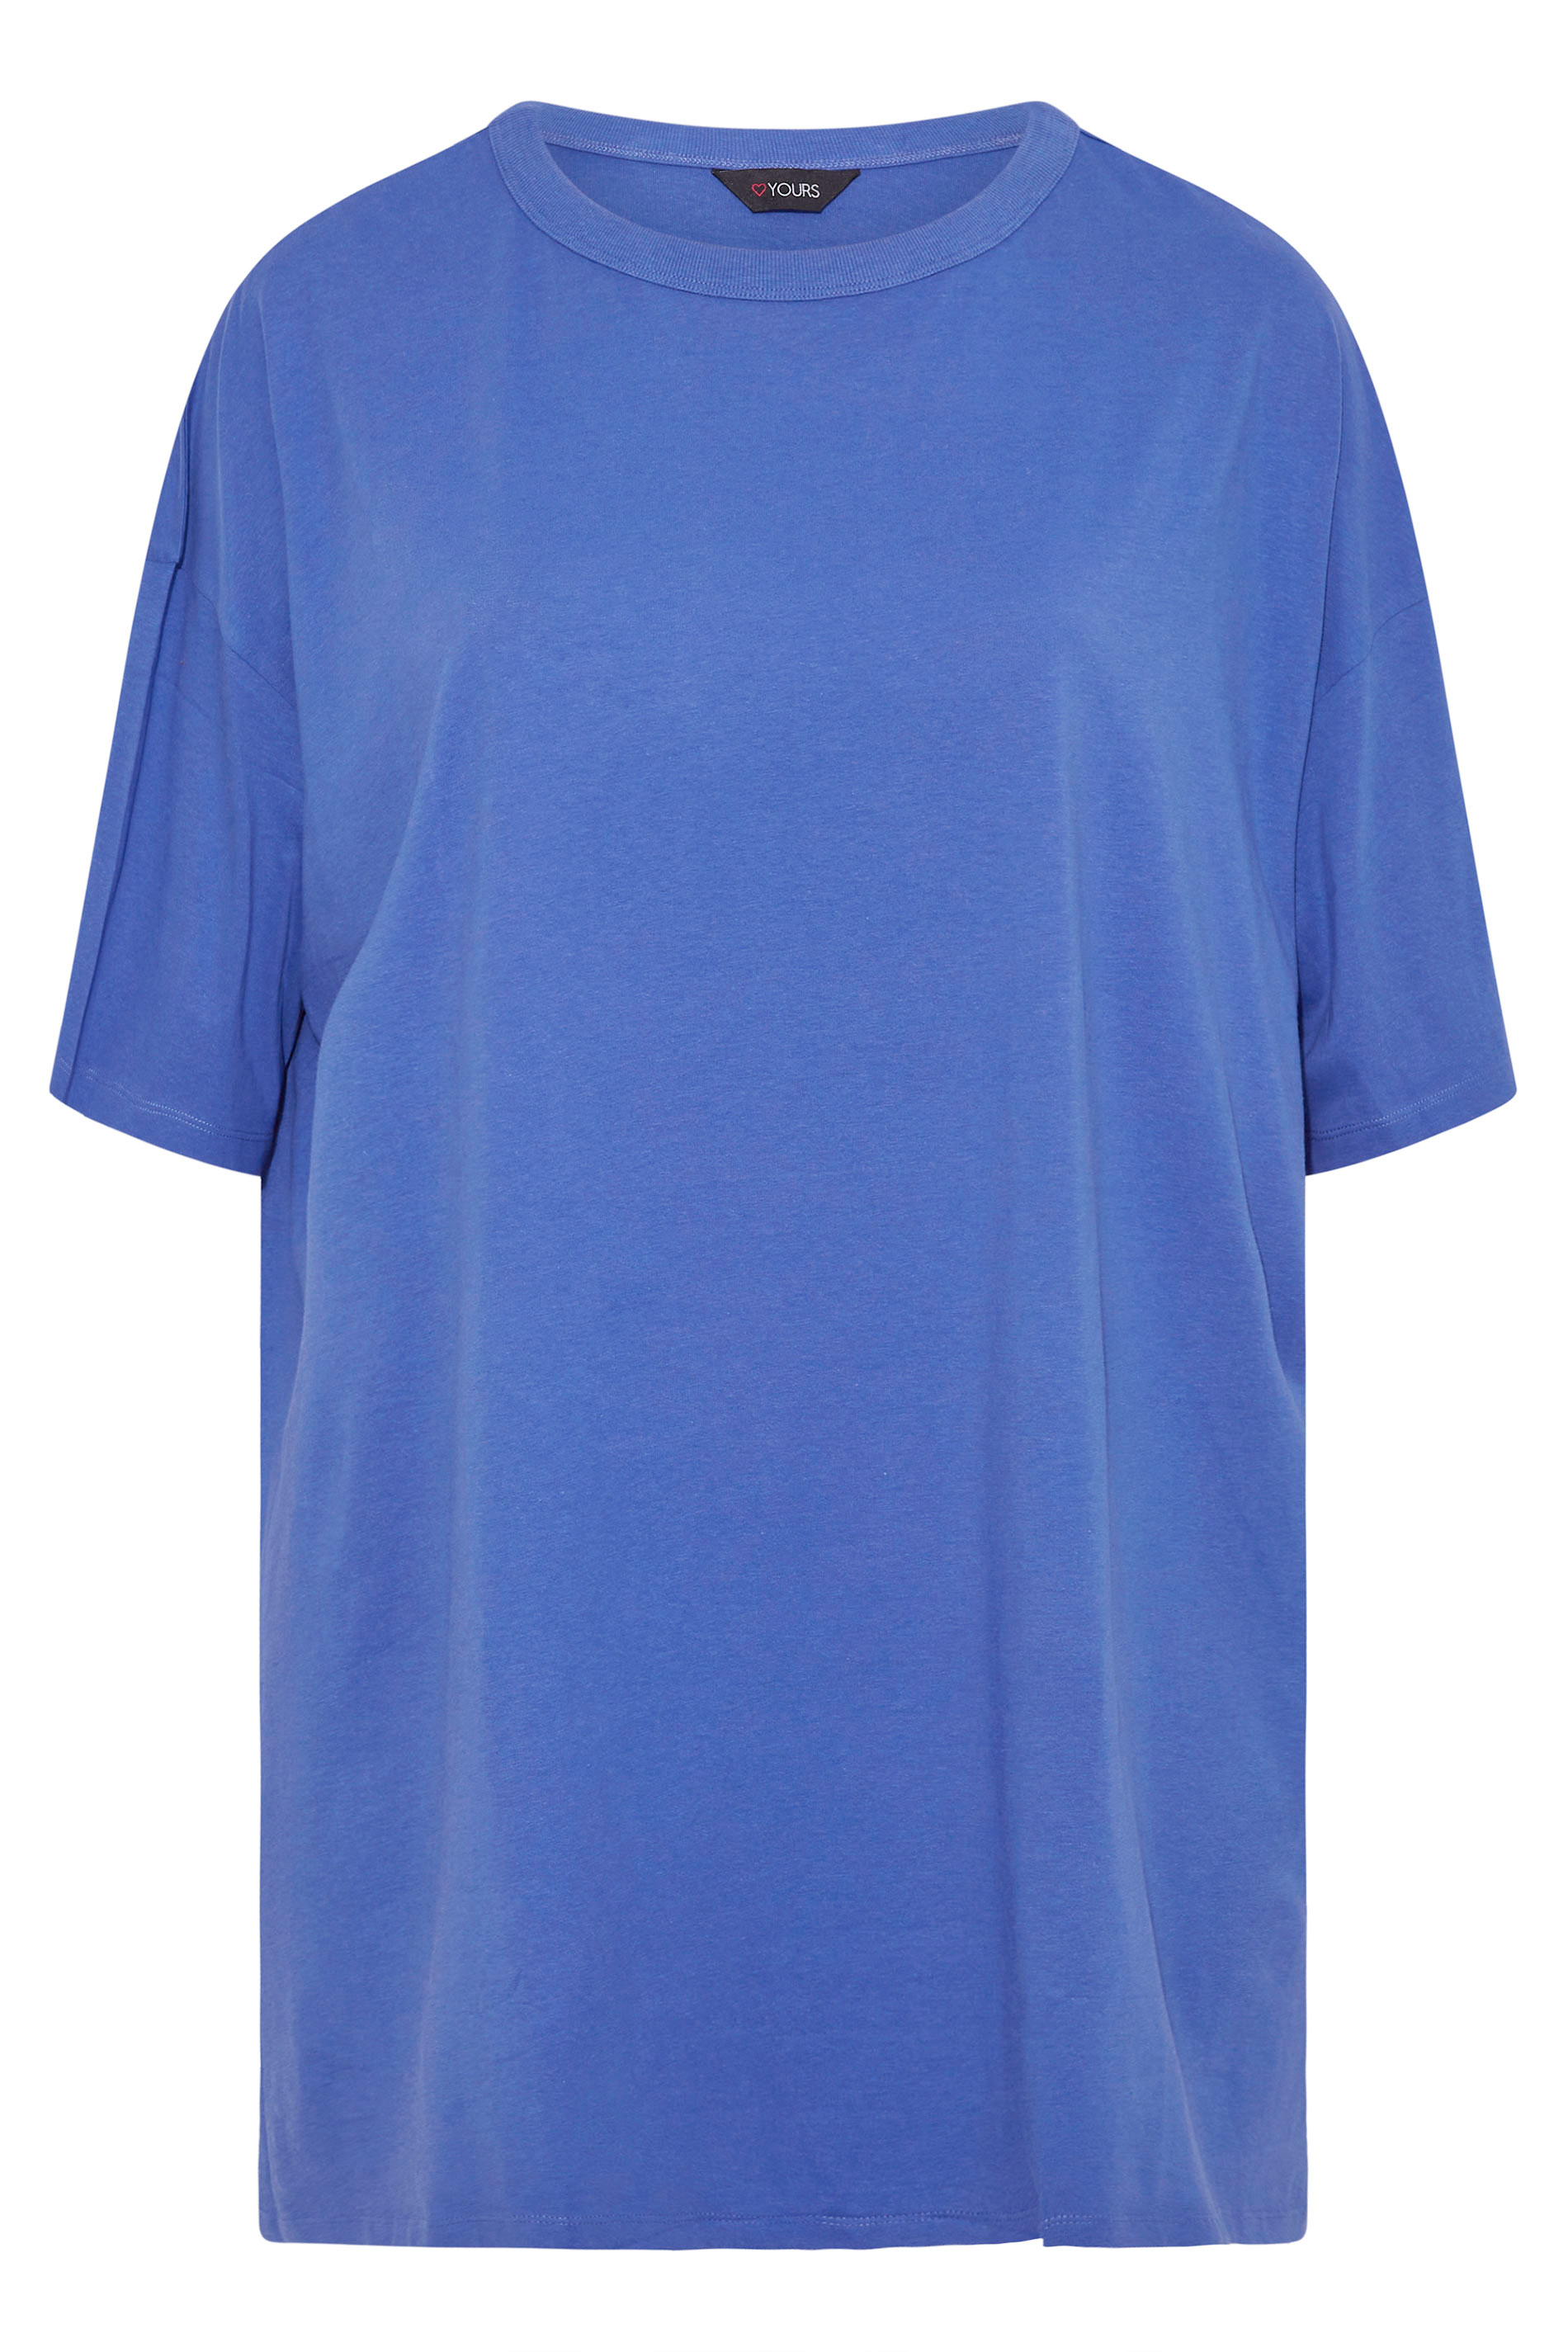 Grande taille  Tops Grande taille  T-Shirts | T-Shirt Bleu-Violet en Jersey Design Oversize - WY05080